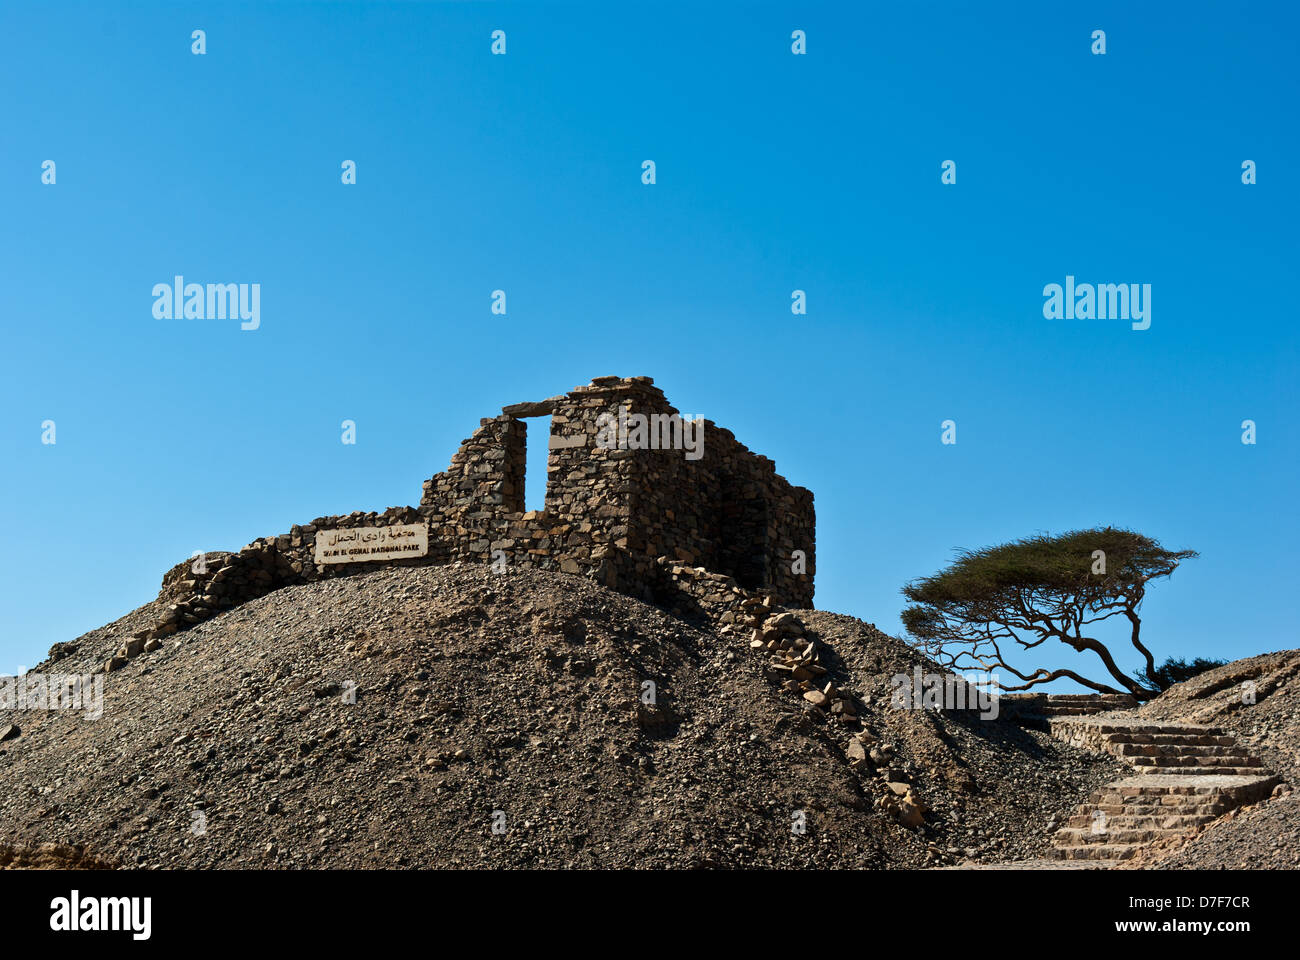 Landschaft mit Ruinen und Akazien in der Nähe von Wadi Gamal (auch buchstabiert als Gemel, Gimal, Gemal oder Jimal) Nationalpark, Oberägypten Stockfoto